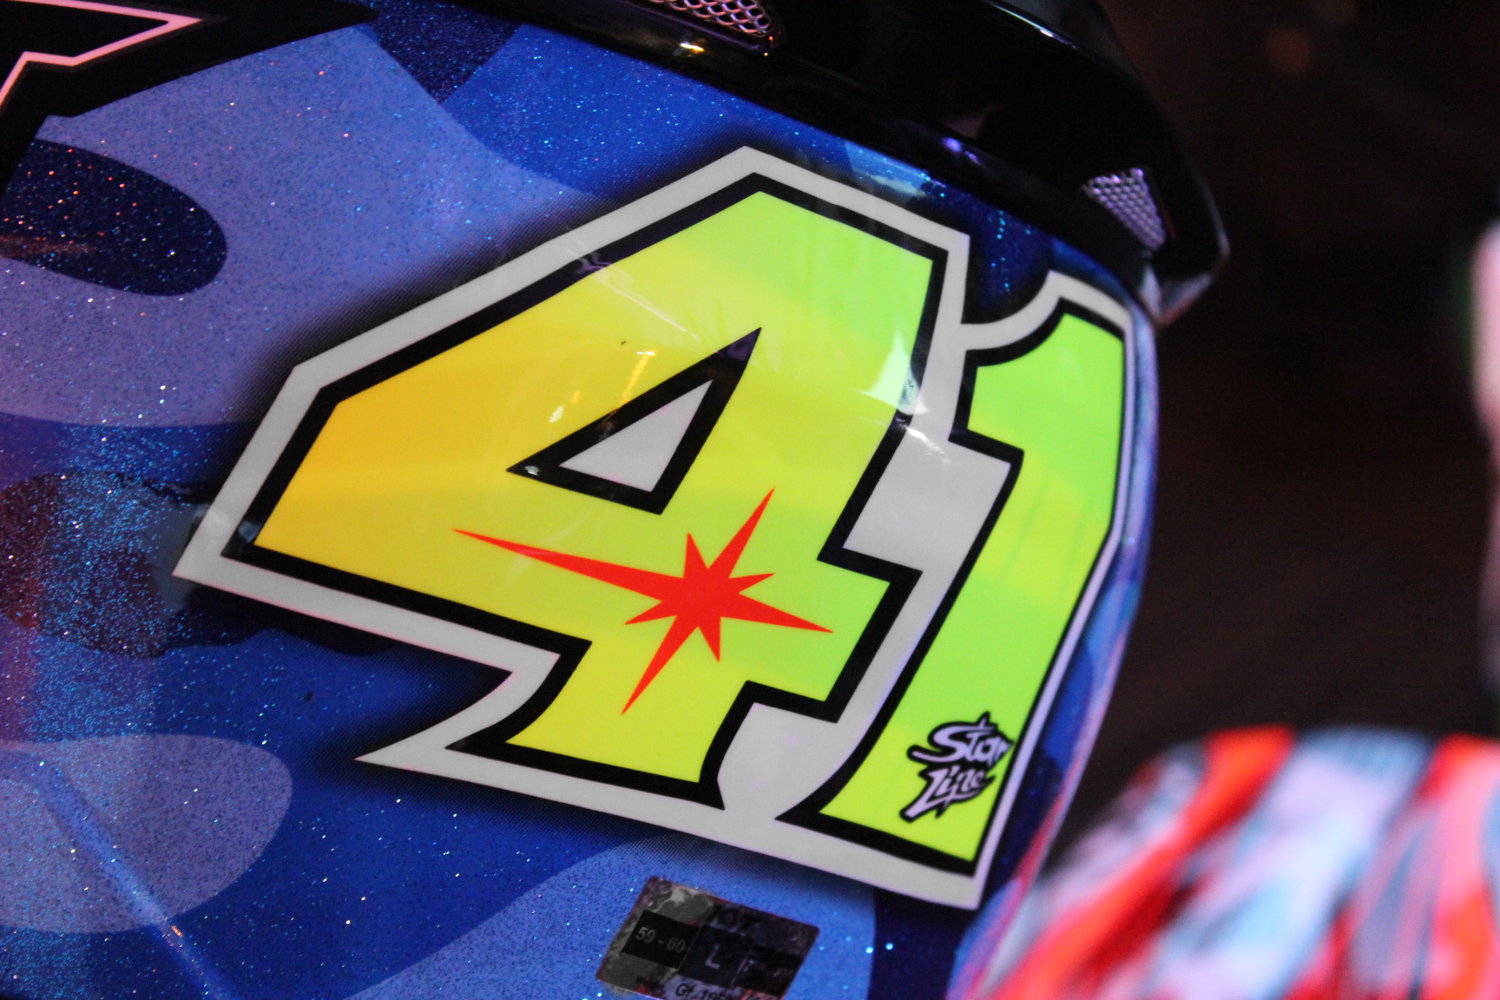 Le 41, numéro du pilote MotoGP espagnol Suzuki